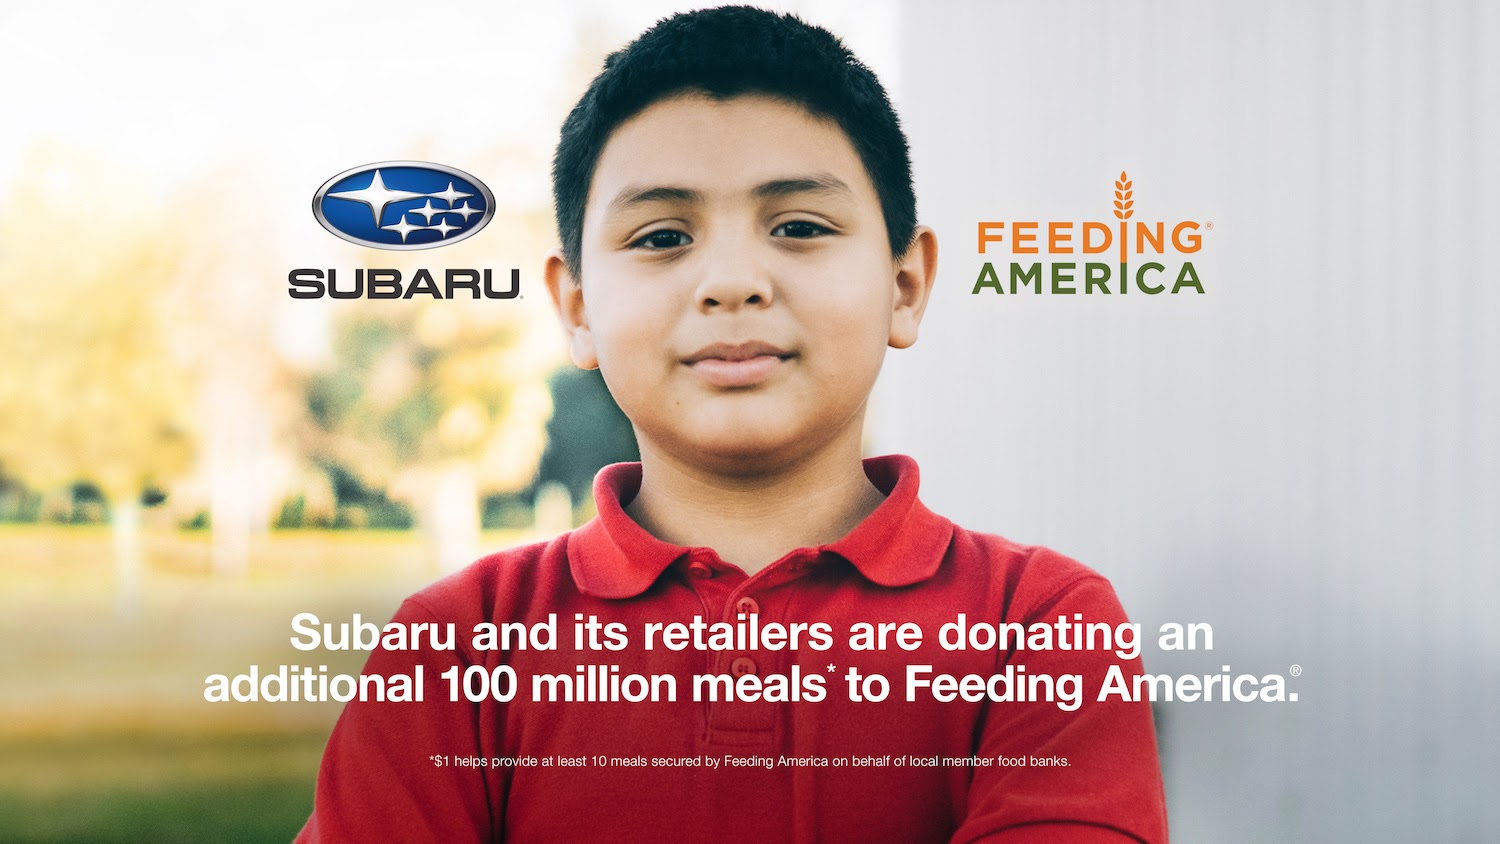 Subaru Feeding America